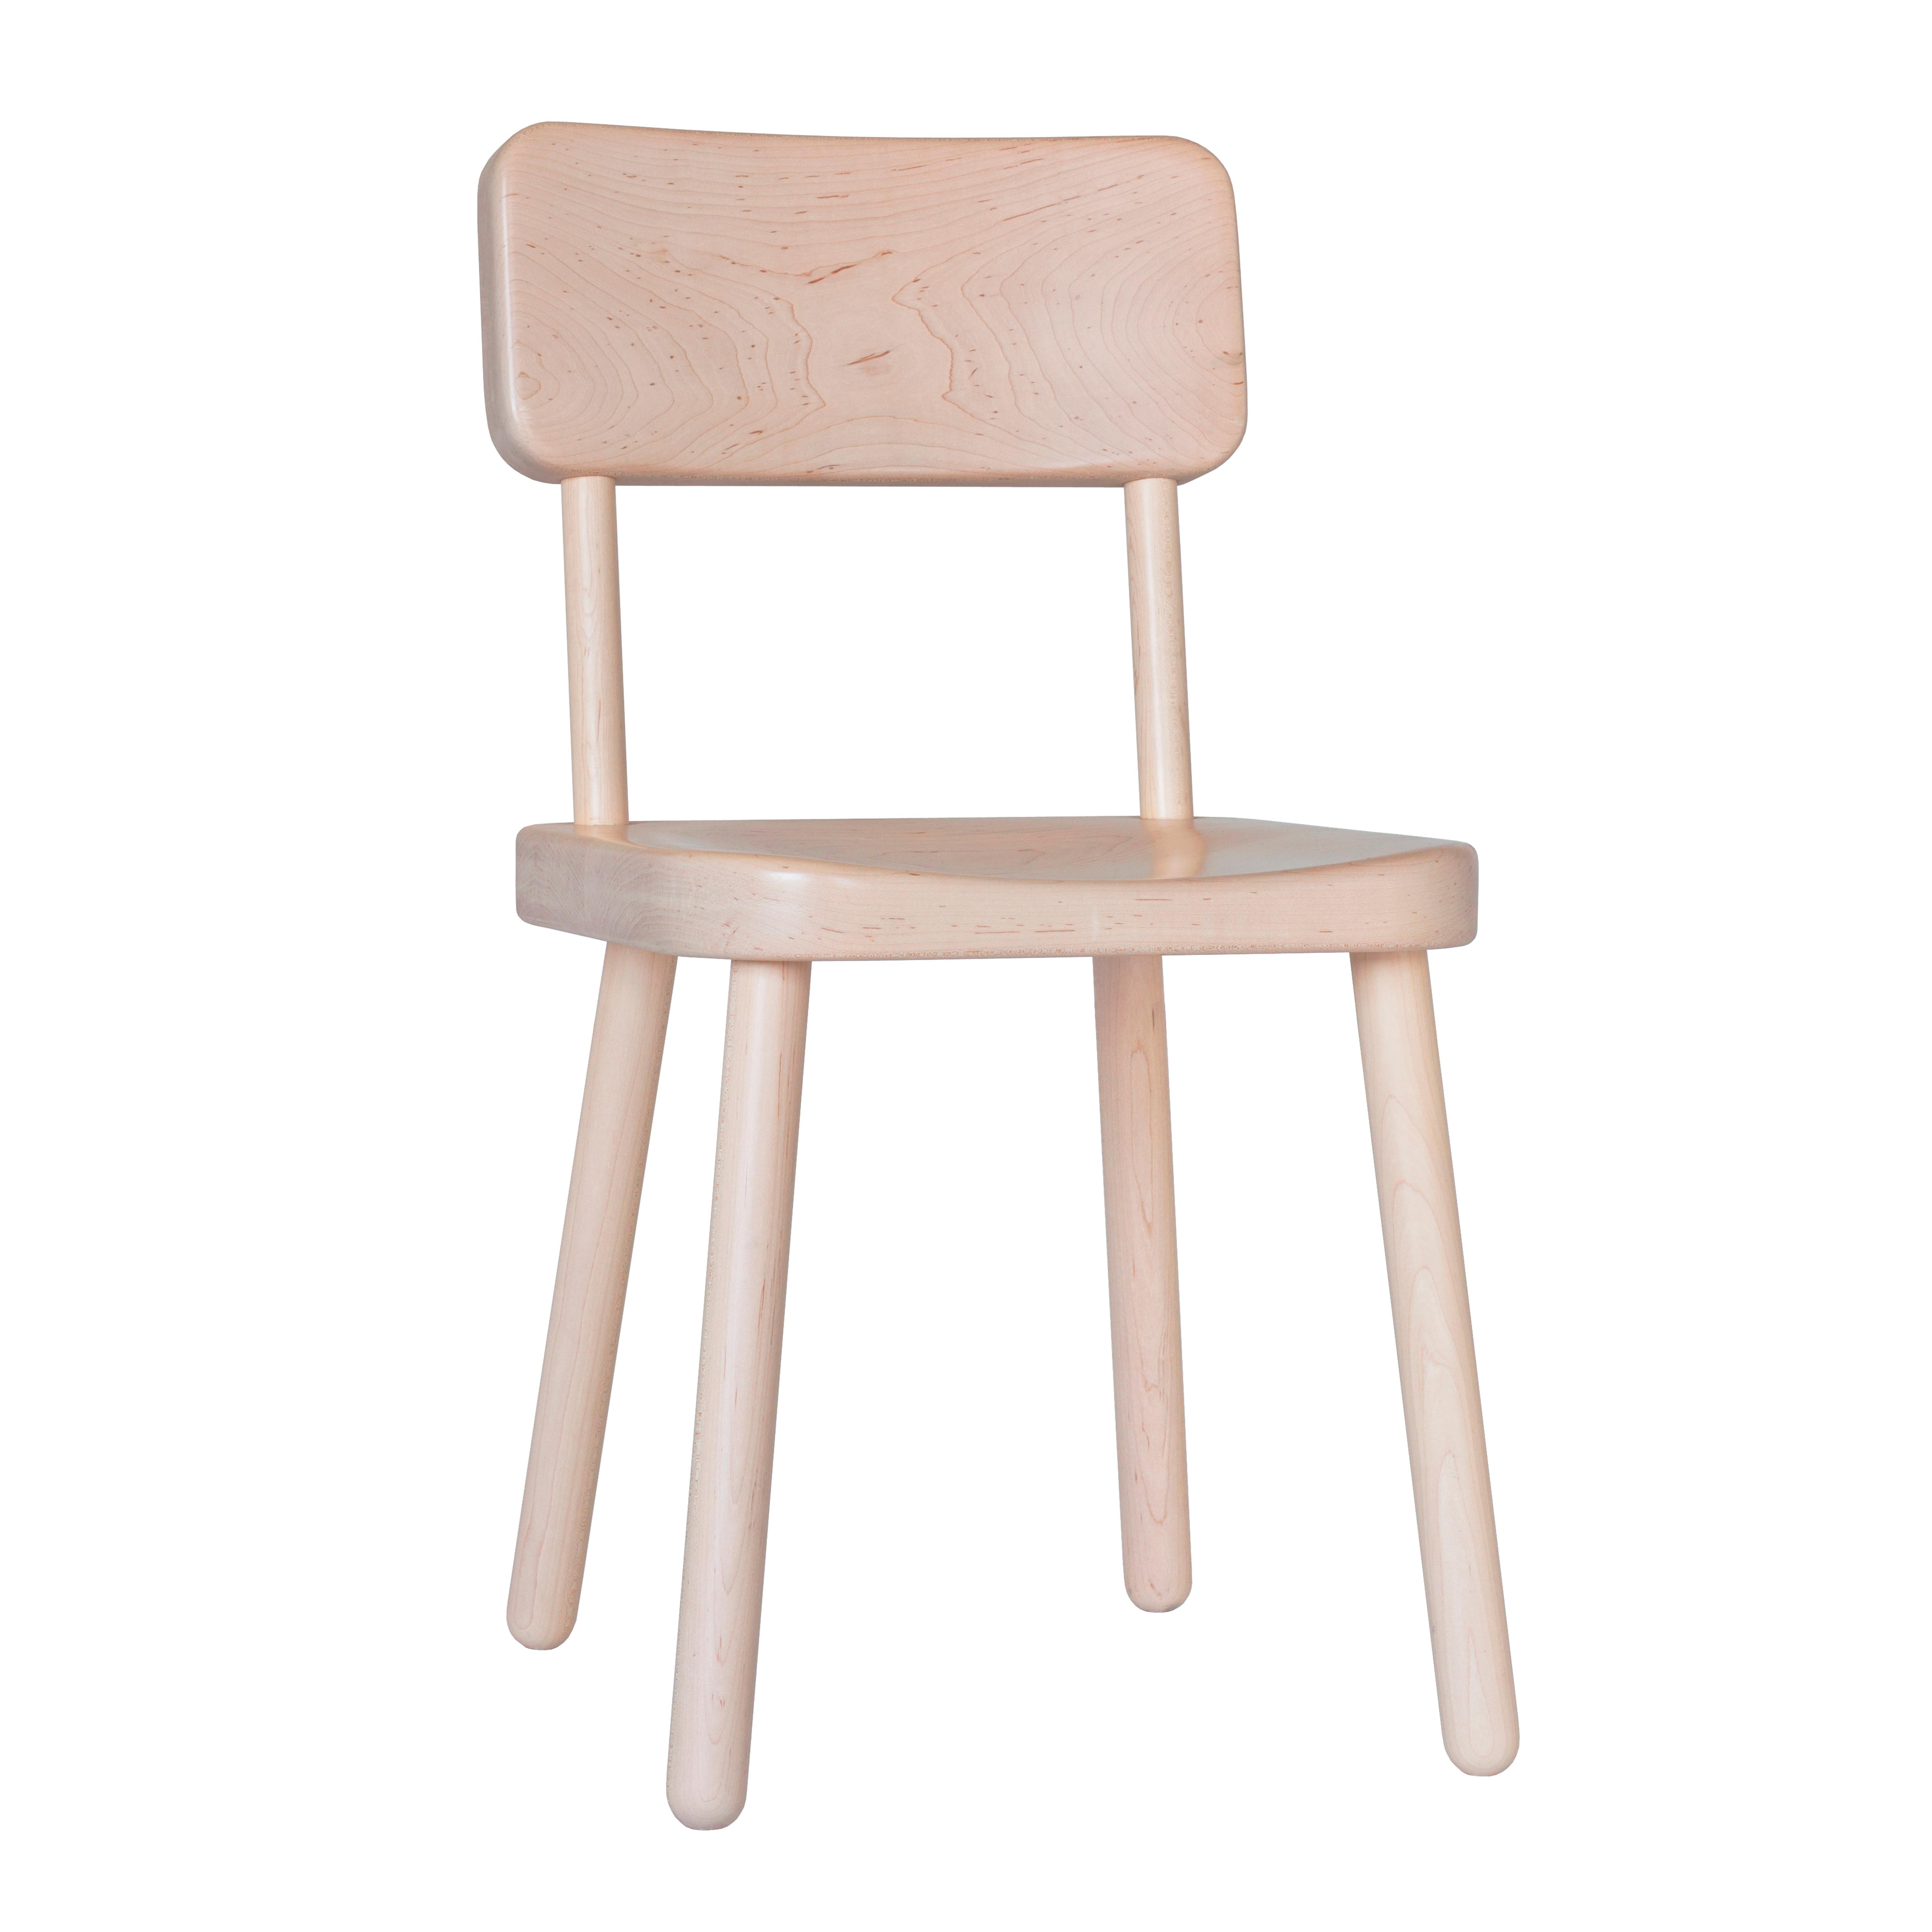 Der Cass Chair ist aus massivem Ahornholz gefertigt und mit Polyurethan beschichtet. Die minimale Form ist robust und weich zugleich. Die Sitzfläche und die Rückenlehne werden mit einer CNC-Maschine geformt, um den Komfort zu erhöhen, und sind dick